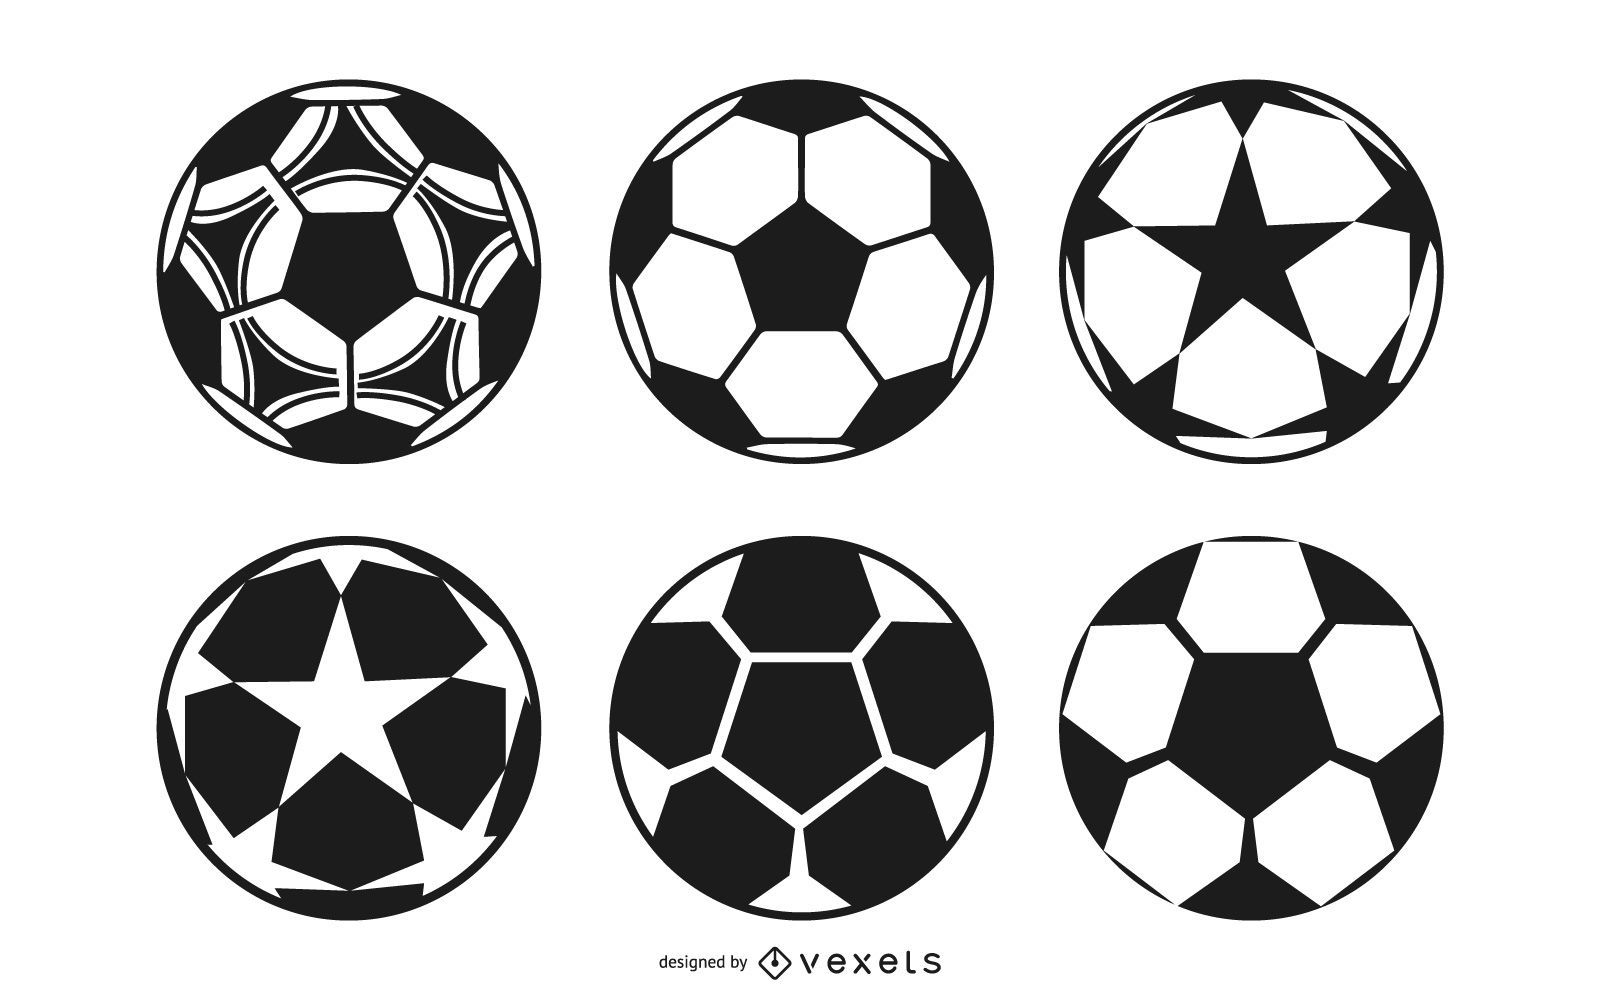 Fu?ball-Ball-Design-Sammlung